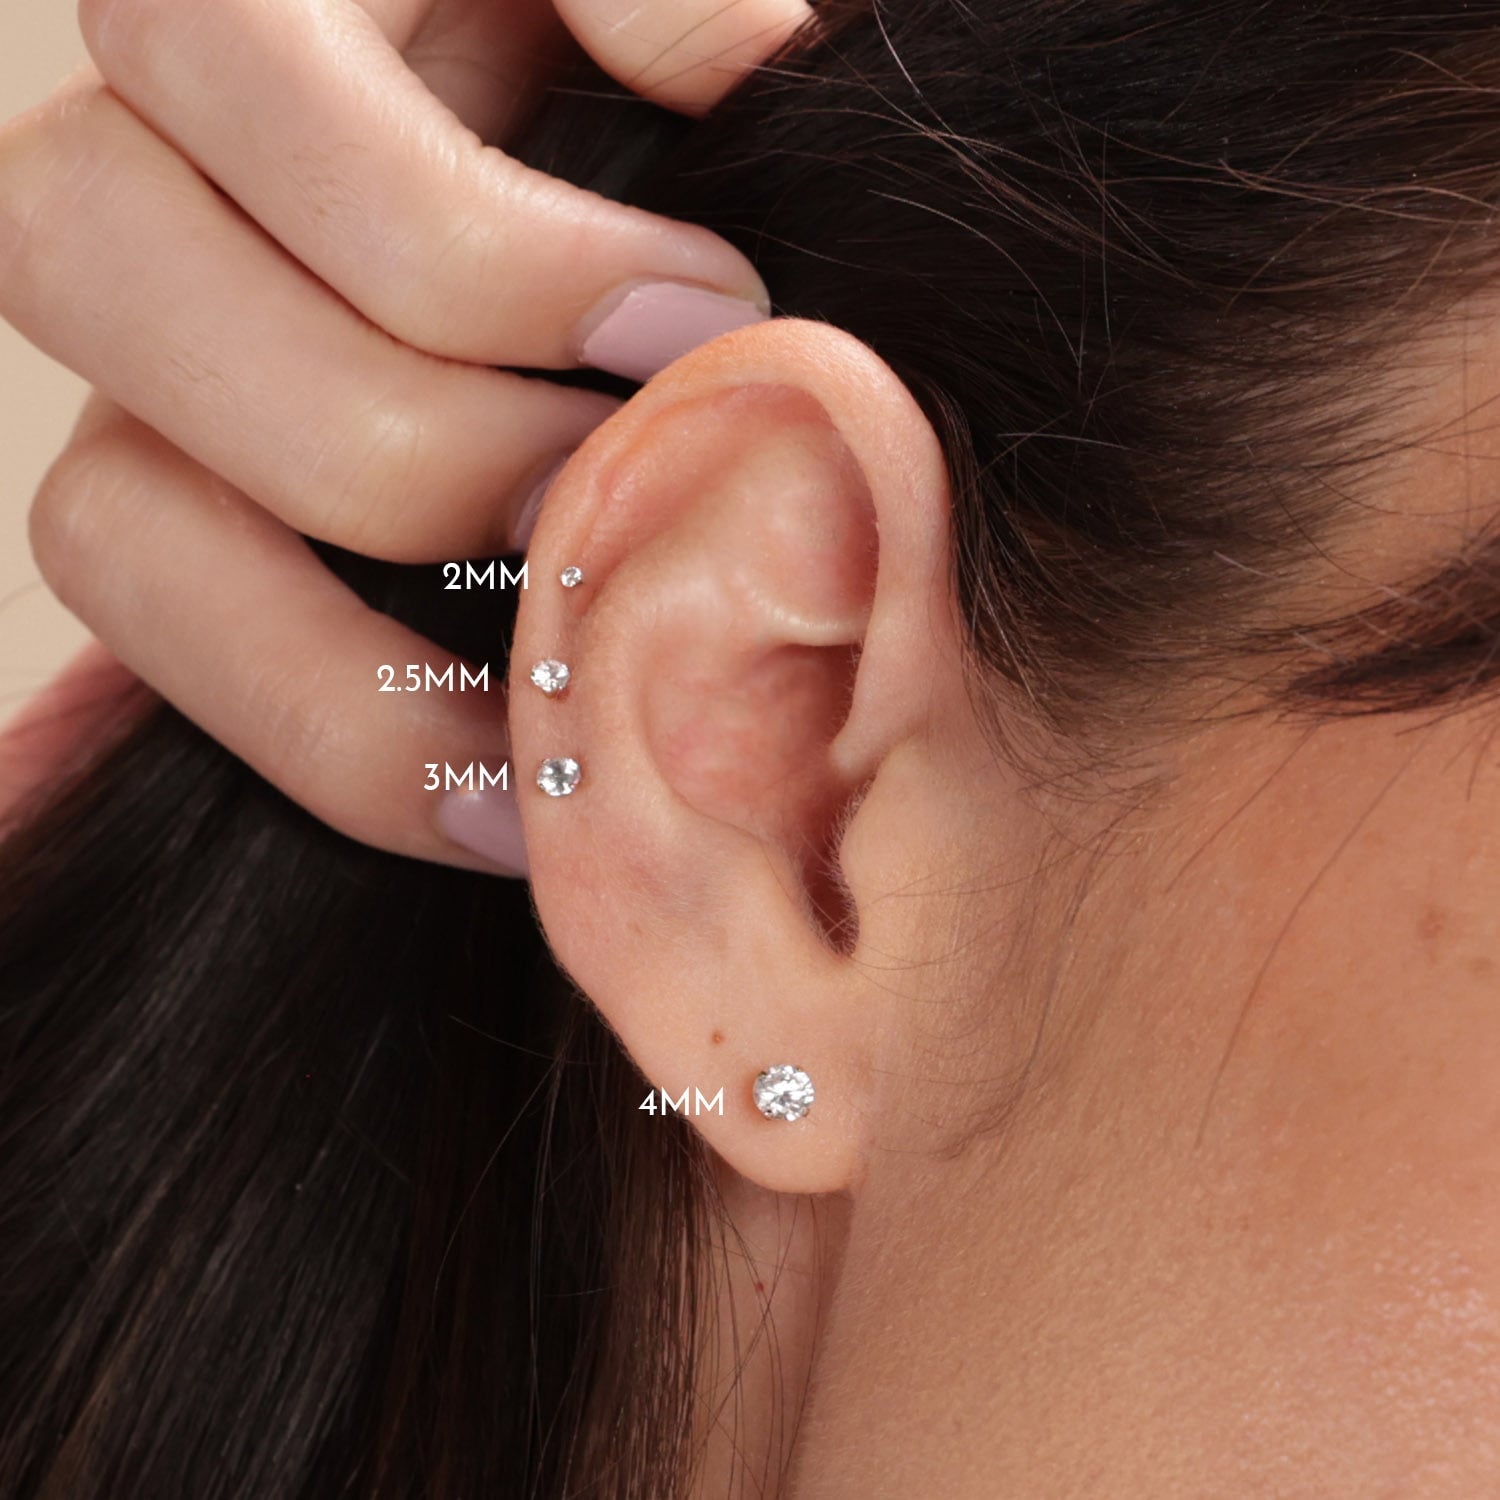 Earring Backs,replacement backs,Secure earring post,Earring nuts,Gold  earring nuts,Gold earring backs,14k gold backs – Instagem